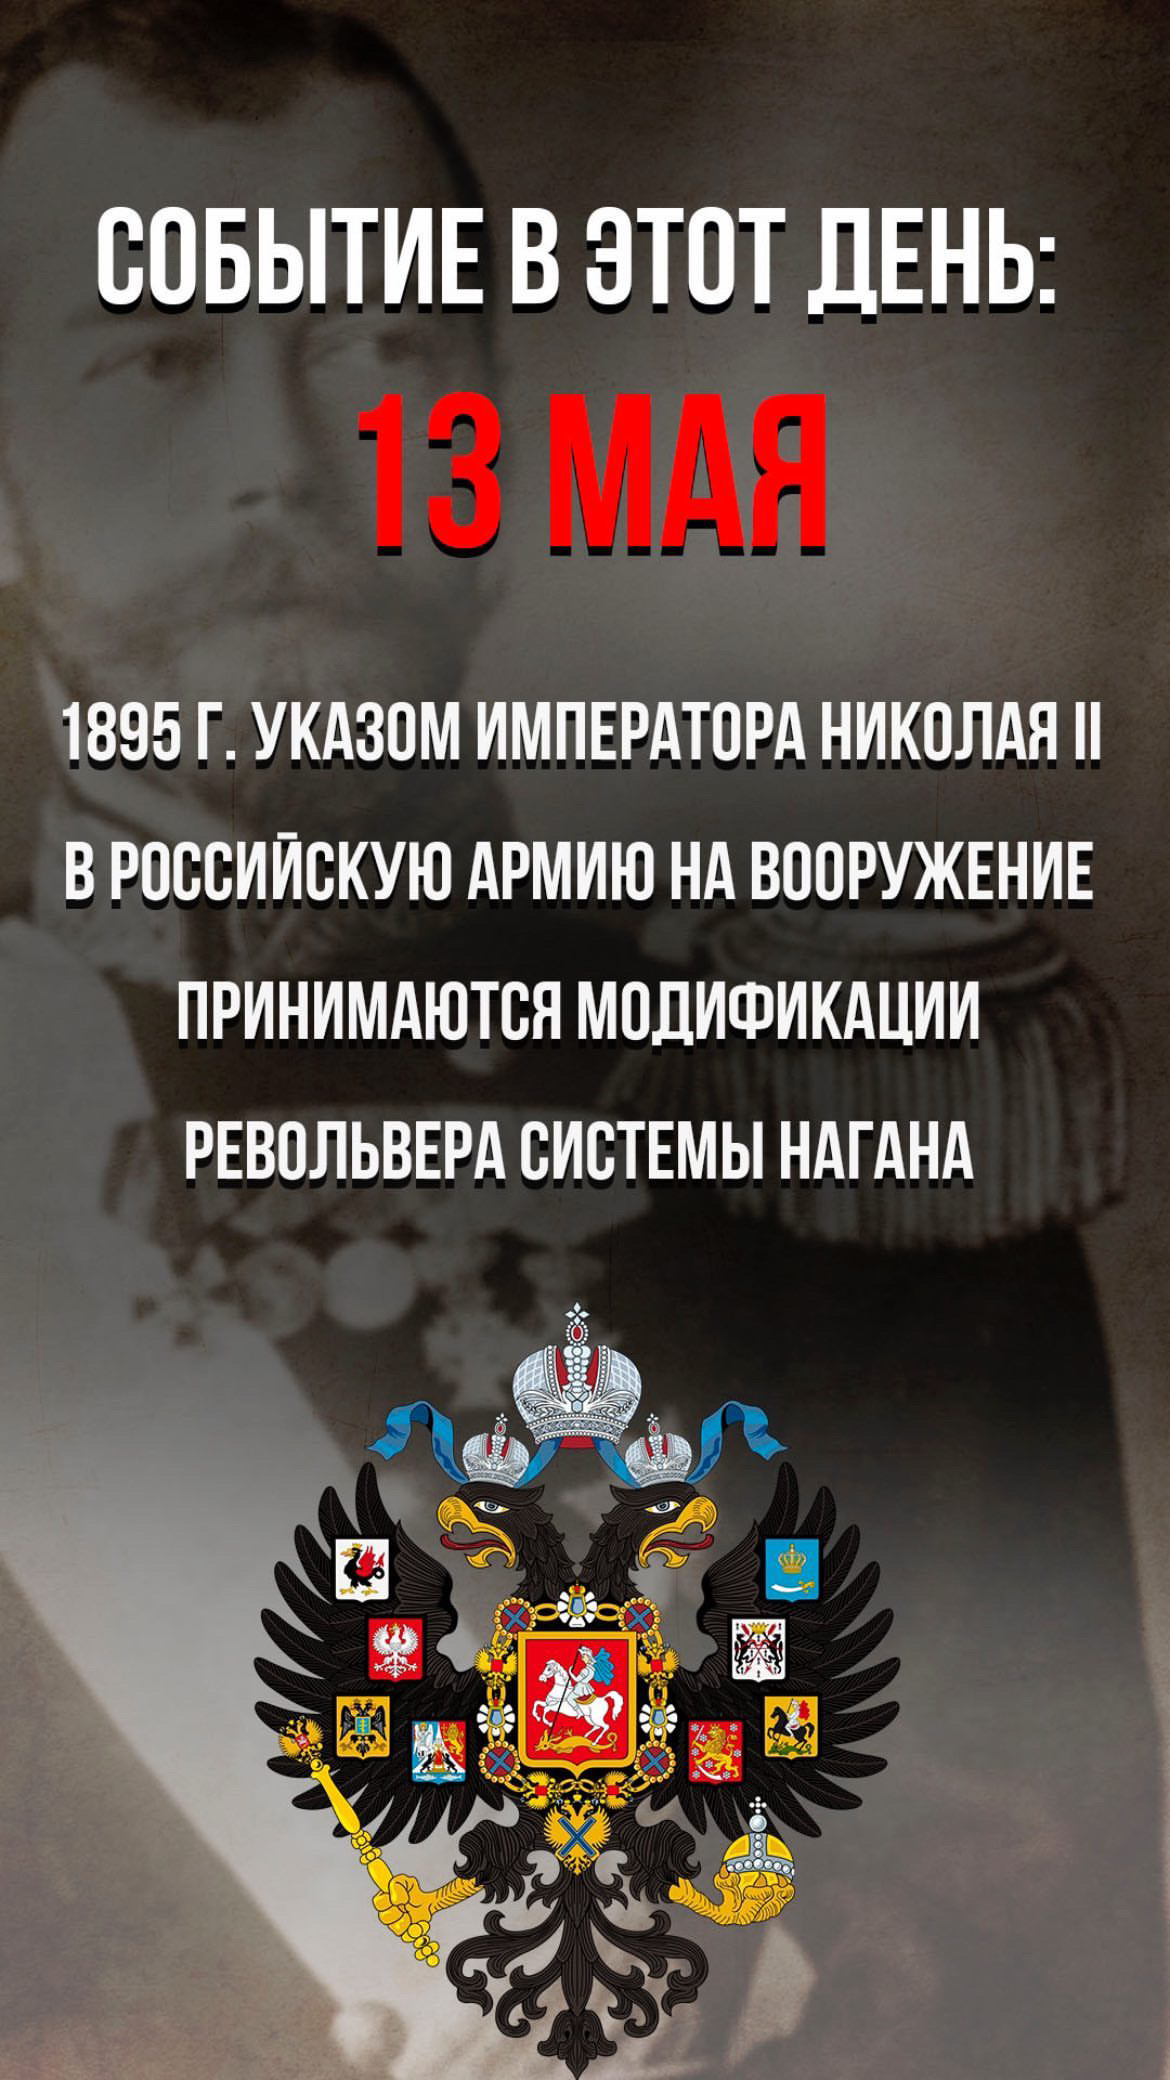 Событие в этот день. 13 мая #shorts #history #история #russia #россия